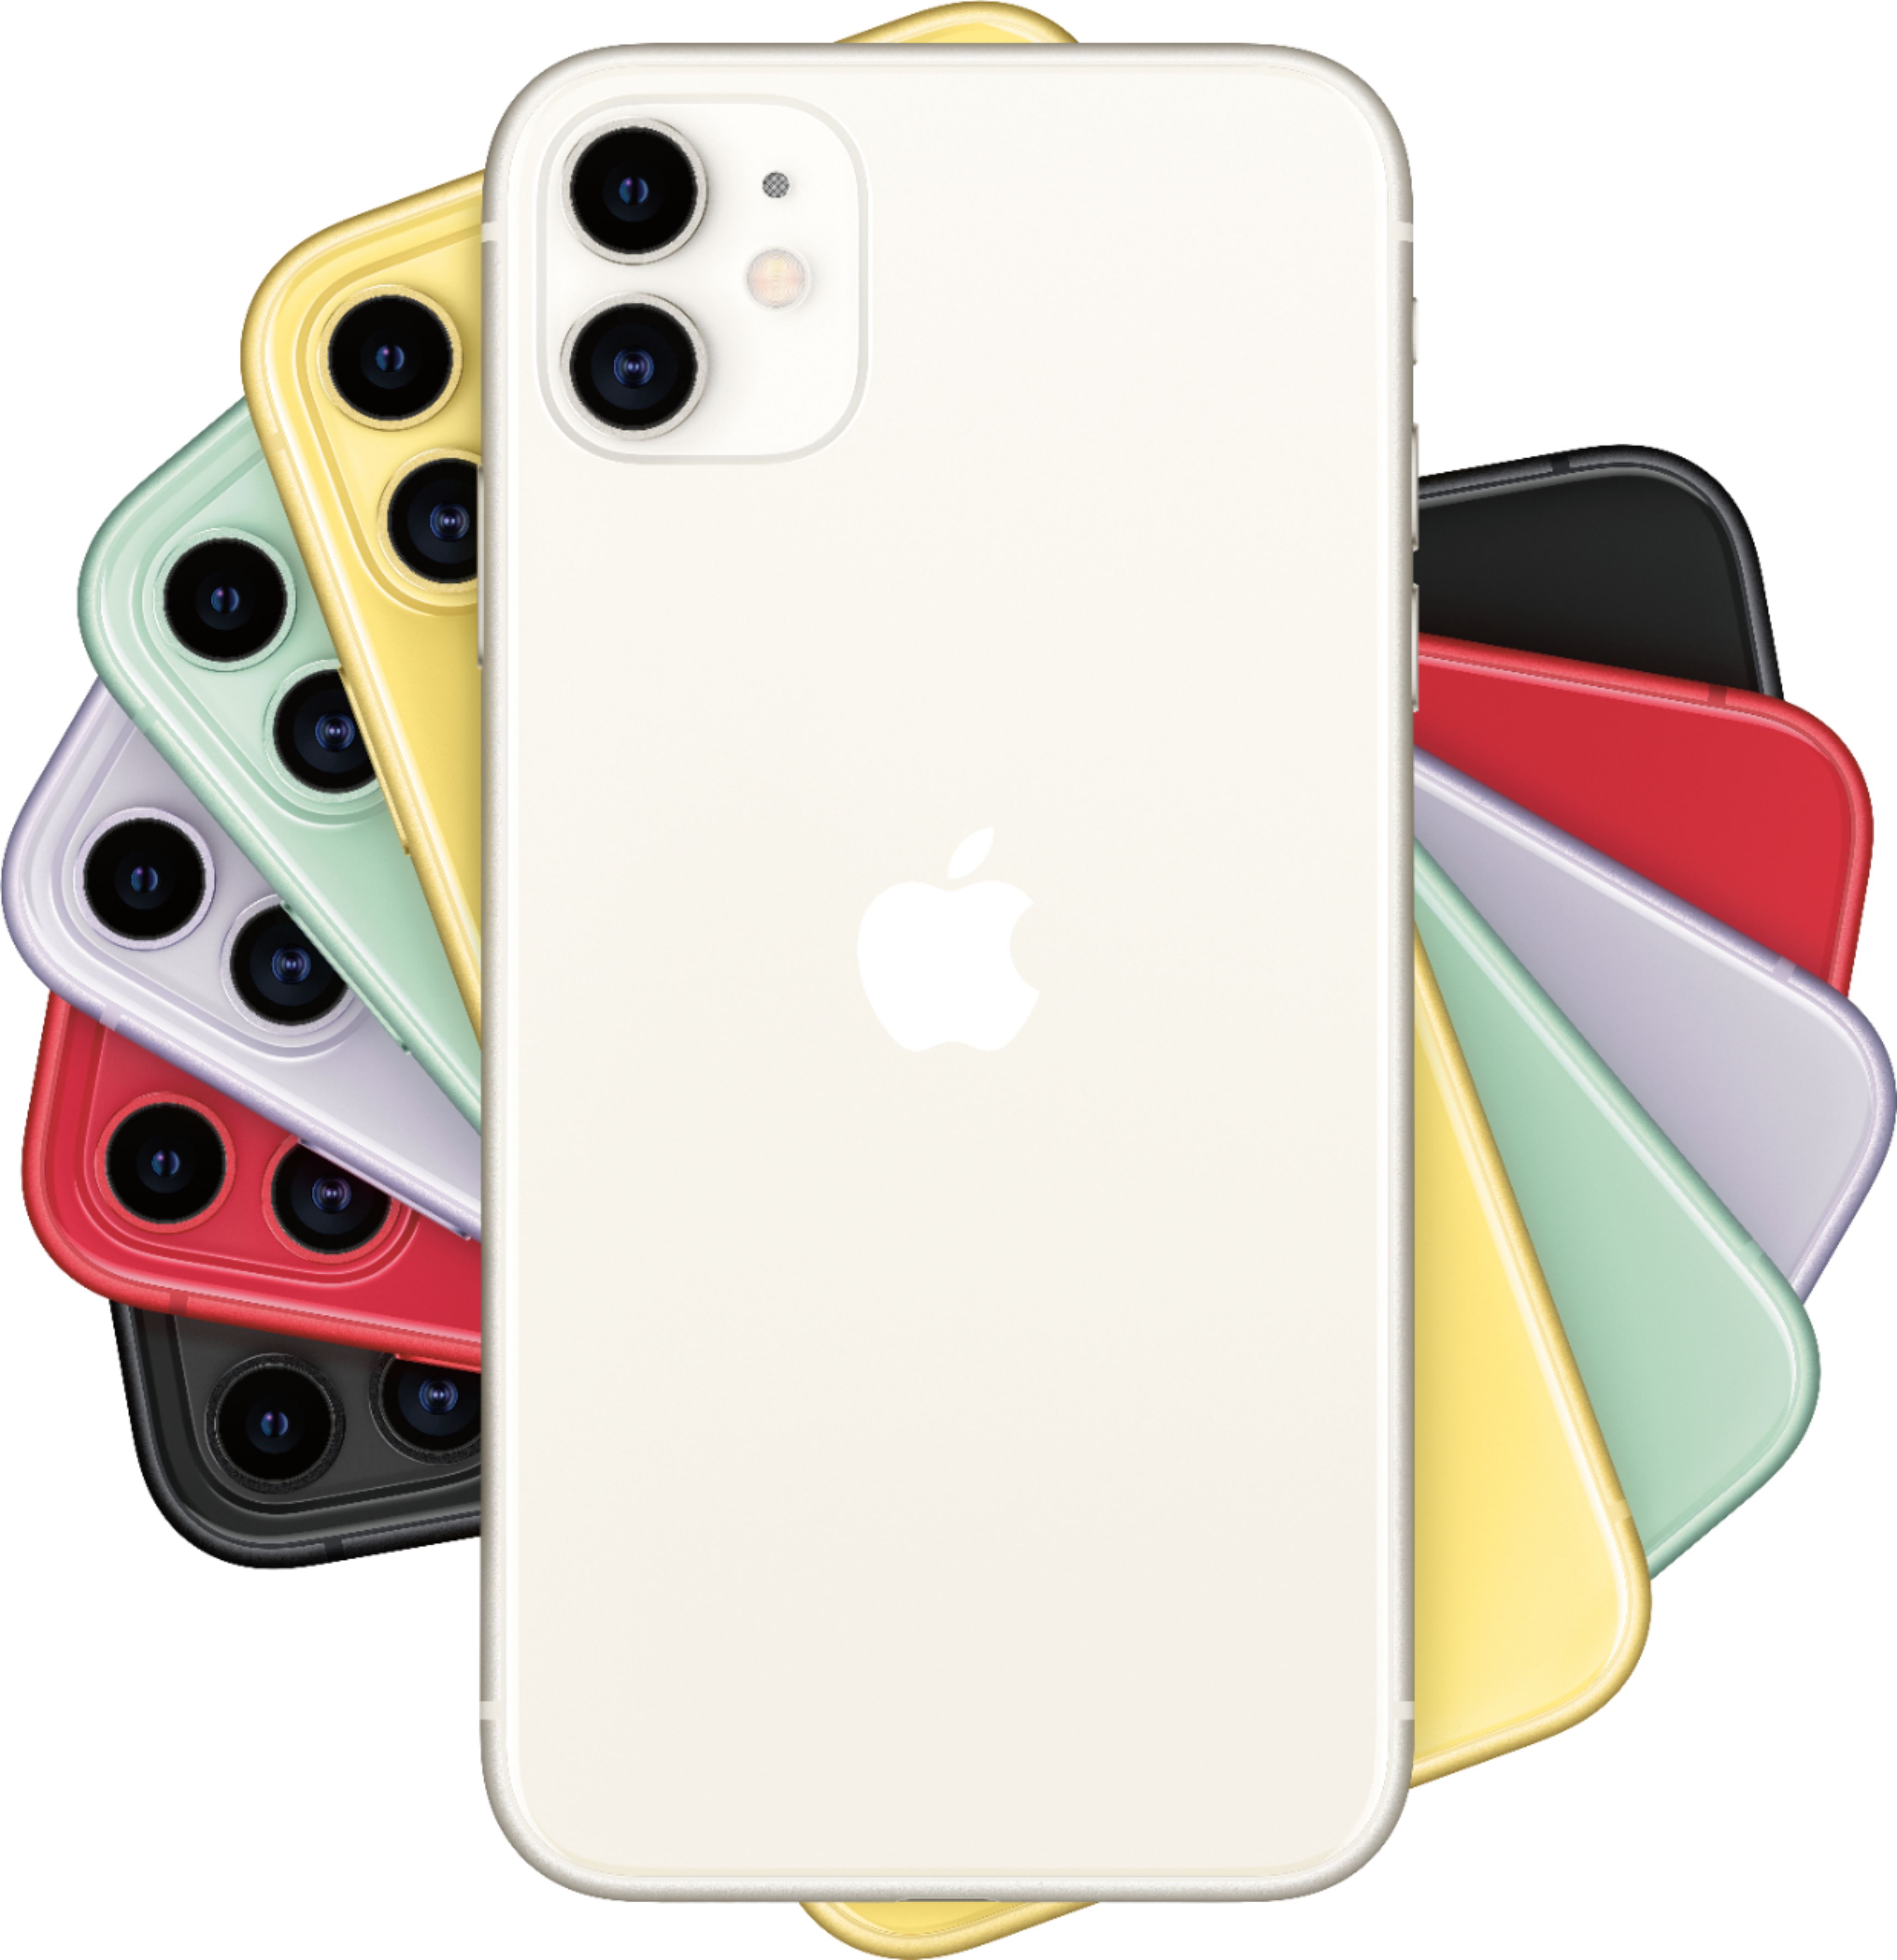 スマートフォン/携帯電話 スマートフォン本体 Apple iPhone 11 256GB White (AT&T) MWLM2LL/A - Best Buy